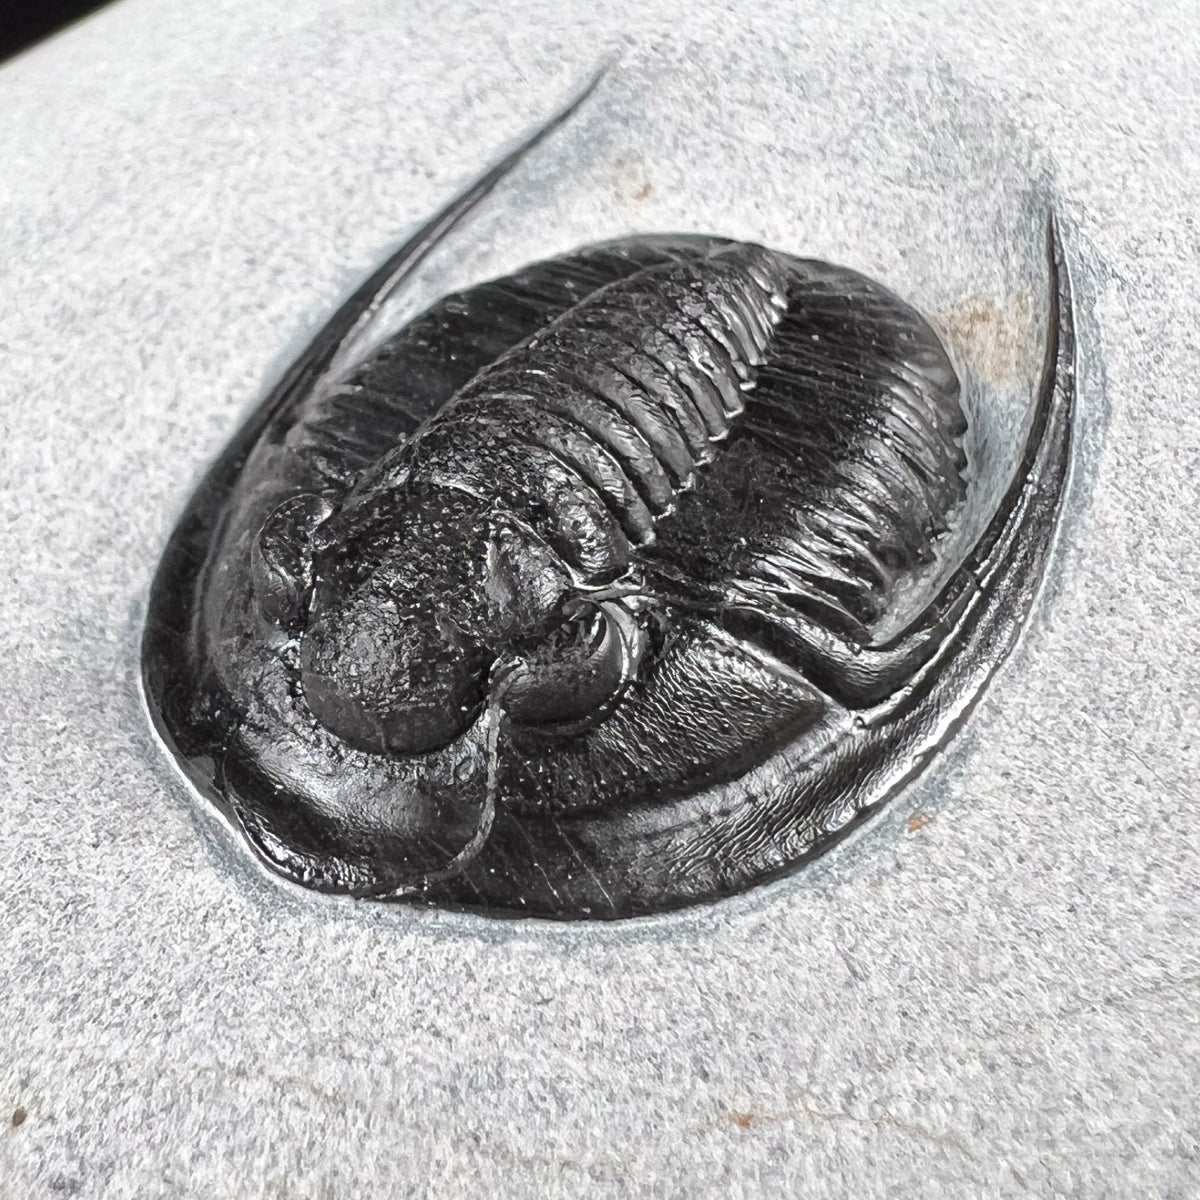 Cornuproetus Trilobite Fossil